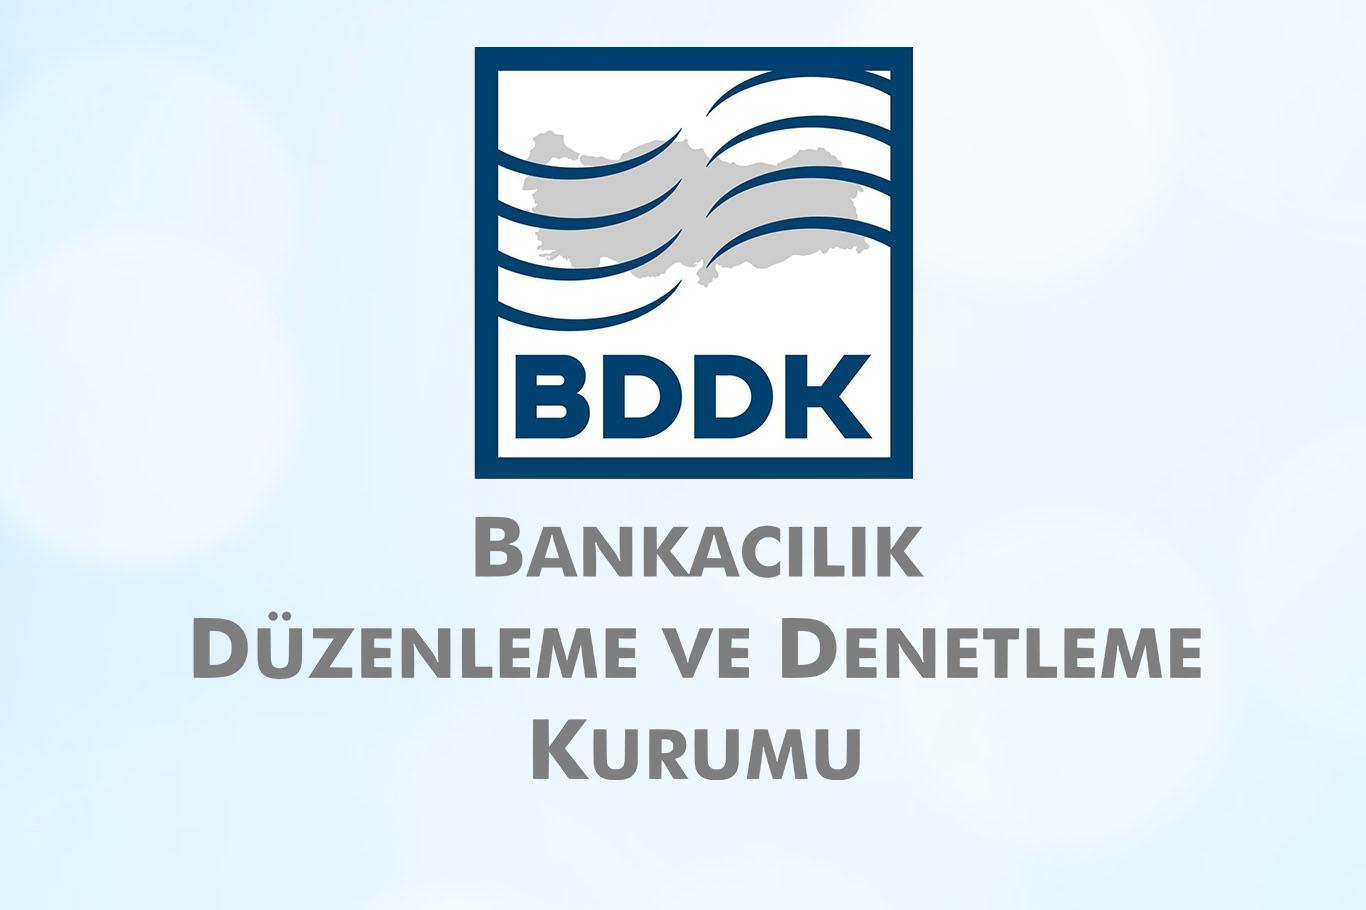 BDDK'dan vatandaşa dolandırıcılık uyarısı